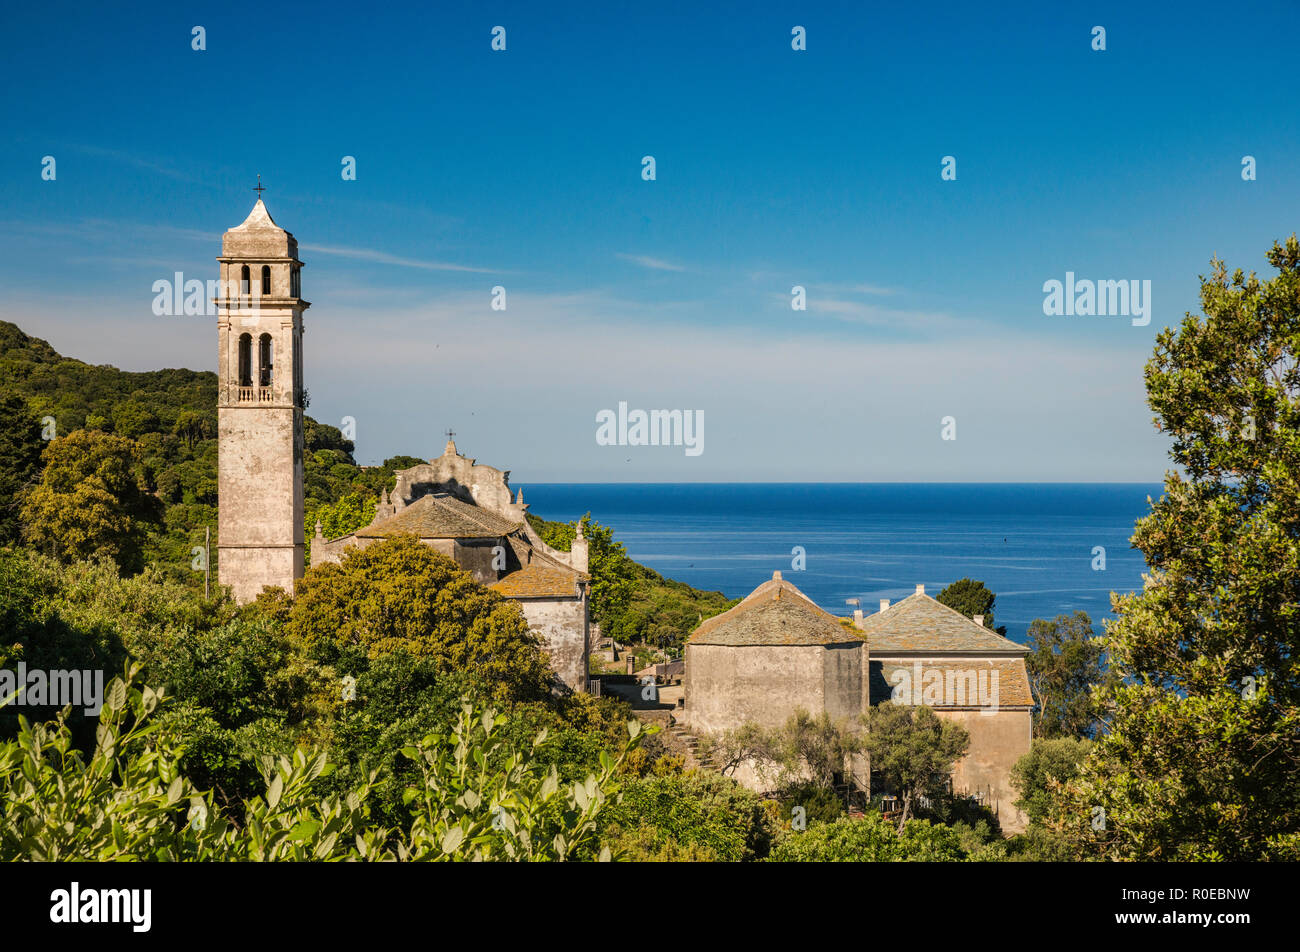 Iglesia de Santa Maria Assunta en la aldea de pino, el Mar Mediterráneo, Cap Corse, Haute-Corse, Córcega, Francia Foto de stock